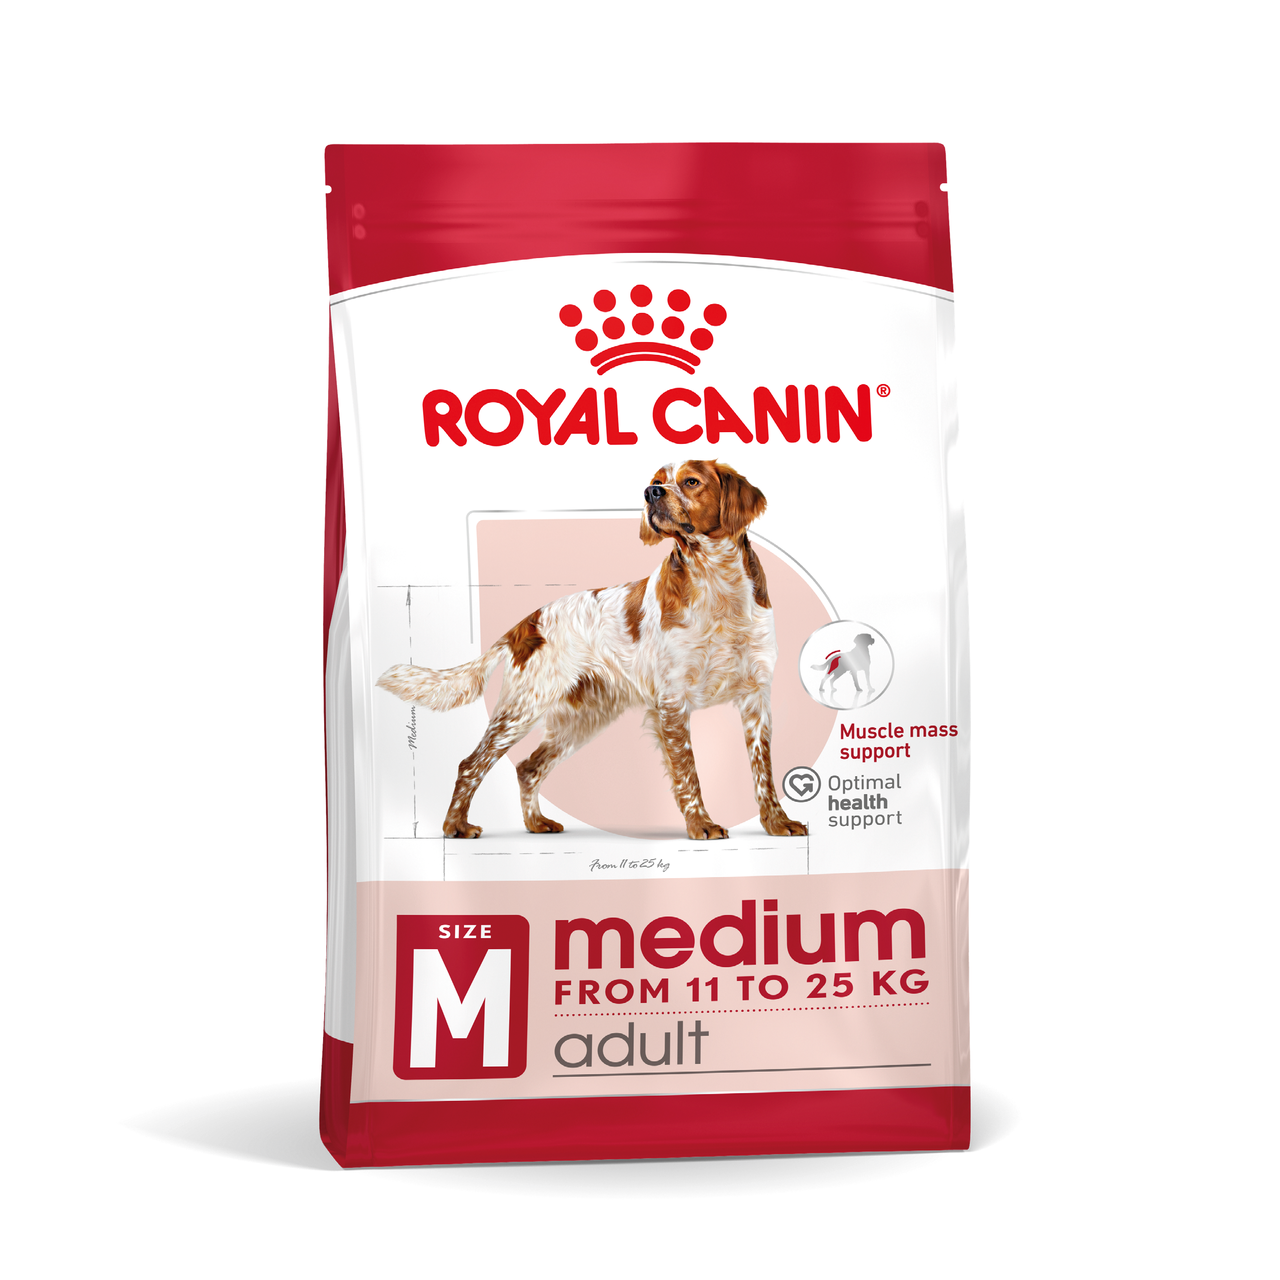 Корм для дорослих собак ROYAL CANIN MEDIUM ADULT 4.0 кг